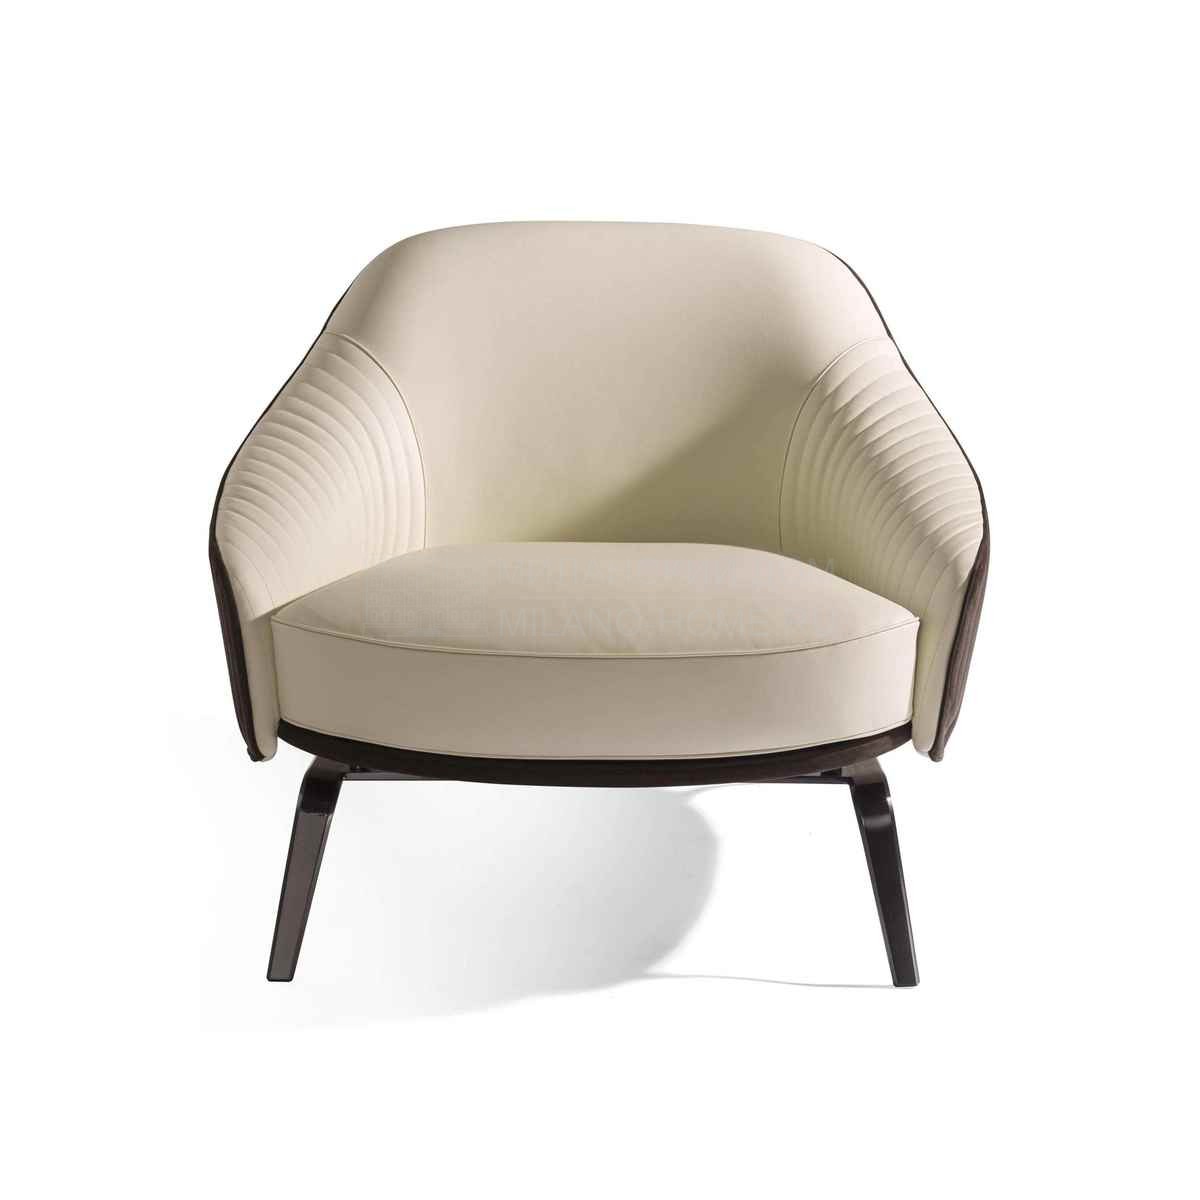 Кожаное кресло Whitney armchair из Италии фабрики IPE CAVALLI VISIONNAIRE